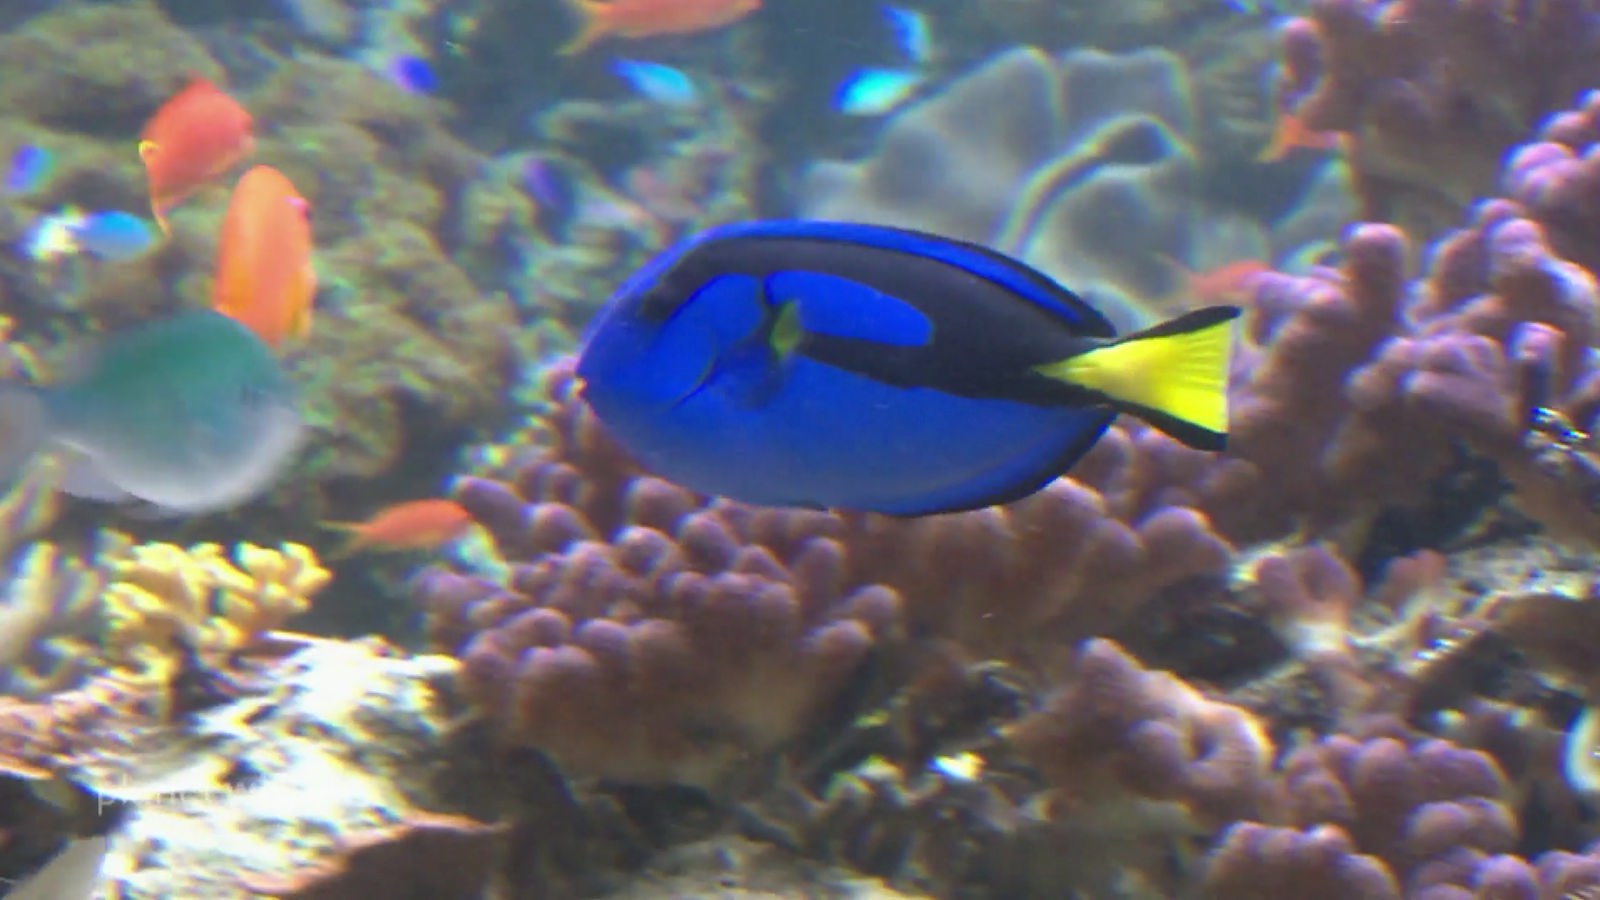 Ein strahlendblauer Paletten-Doktorfisch im Aquarium.